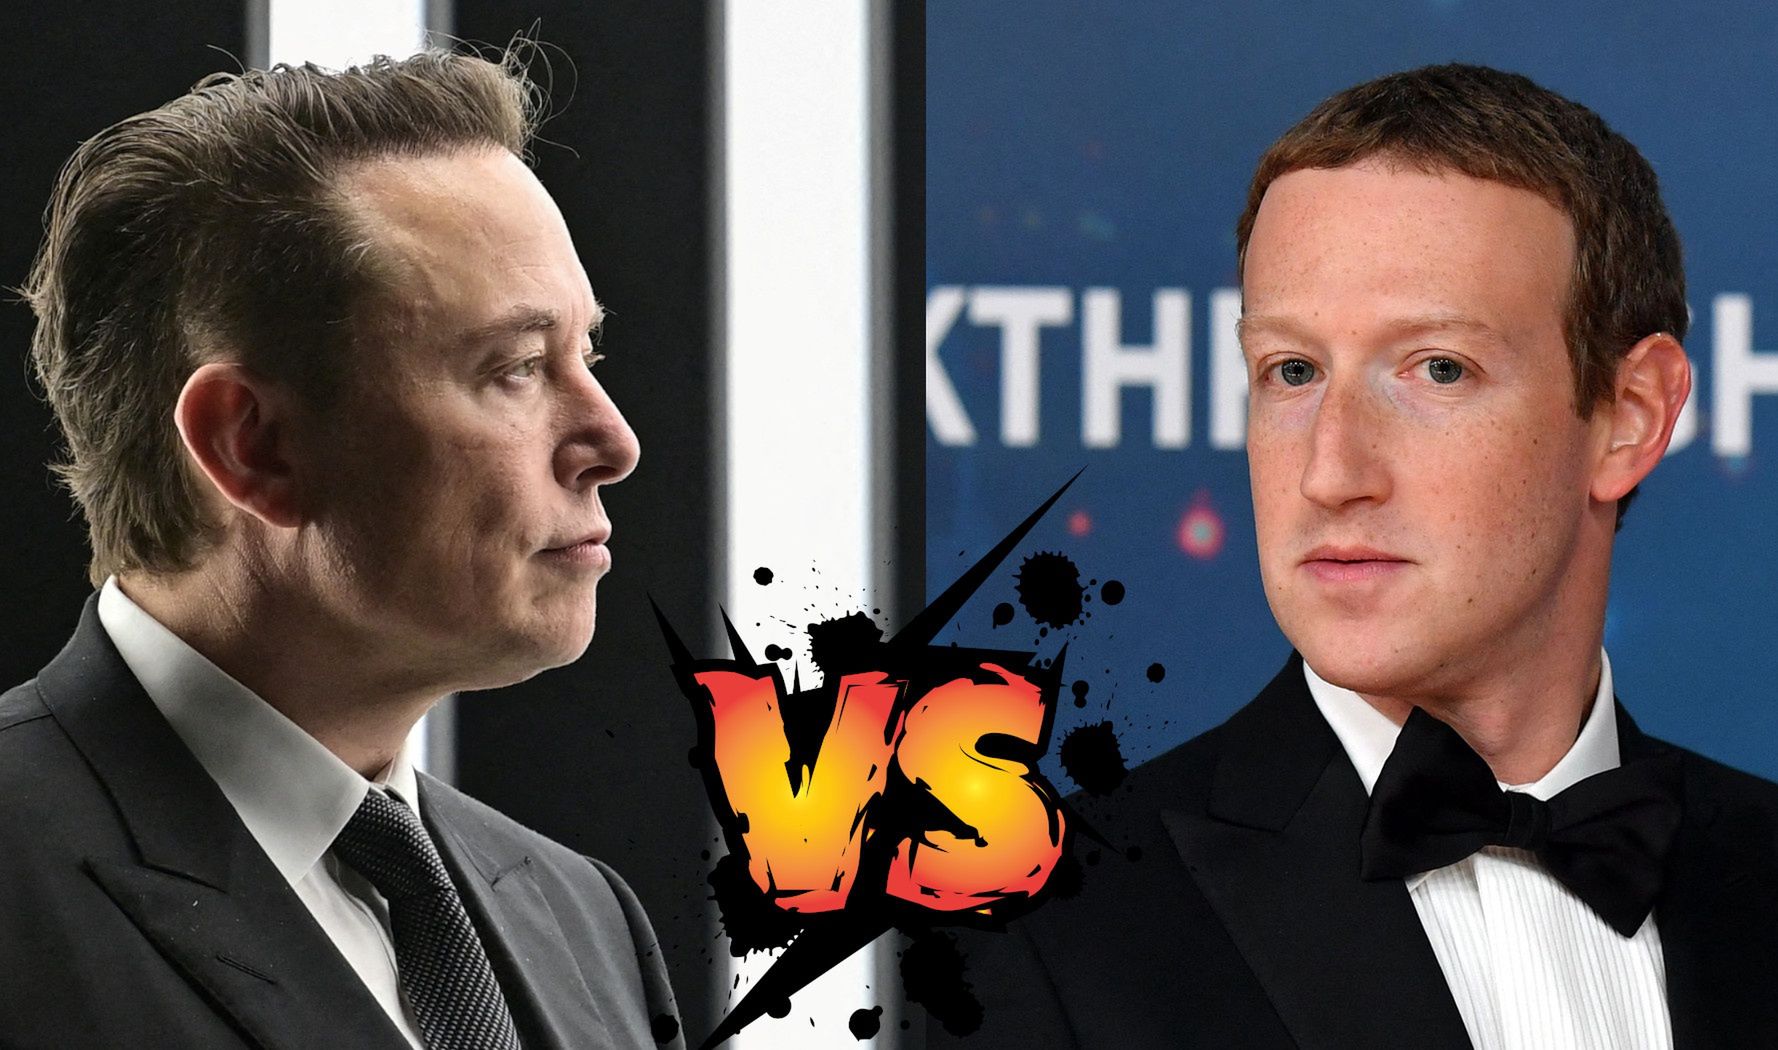 Walka Musk vs. Zuckerberg jednak się nie odbędzie? Wymowny wpis